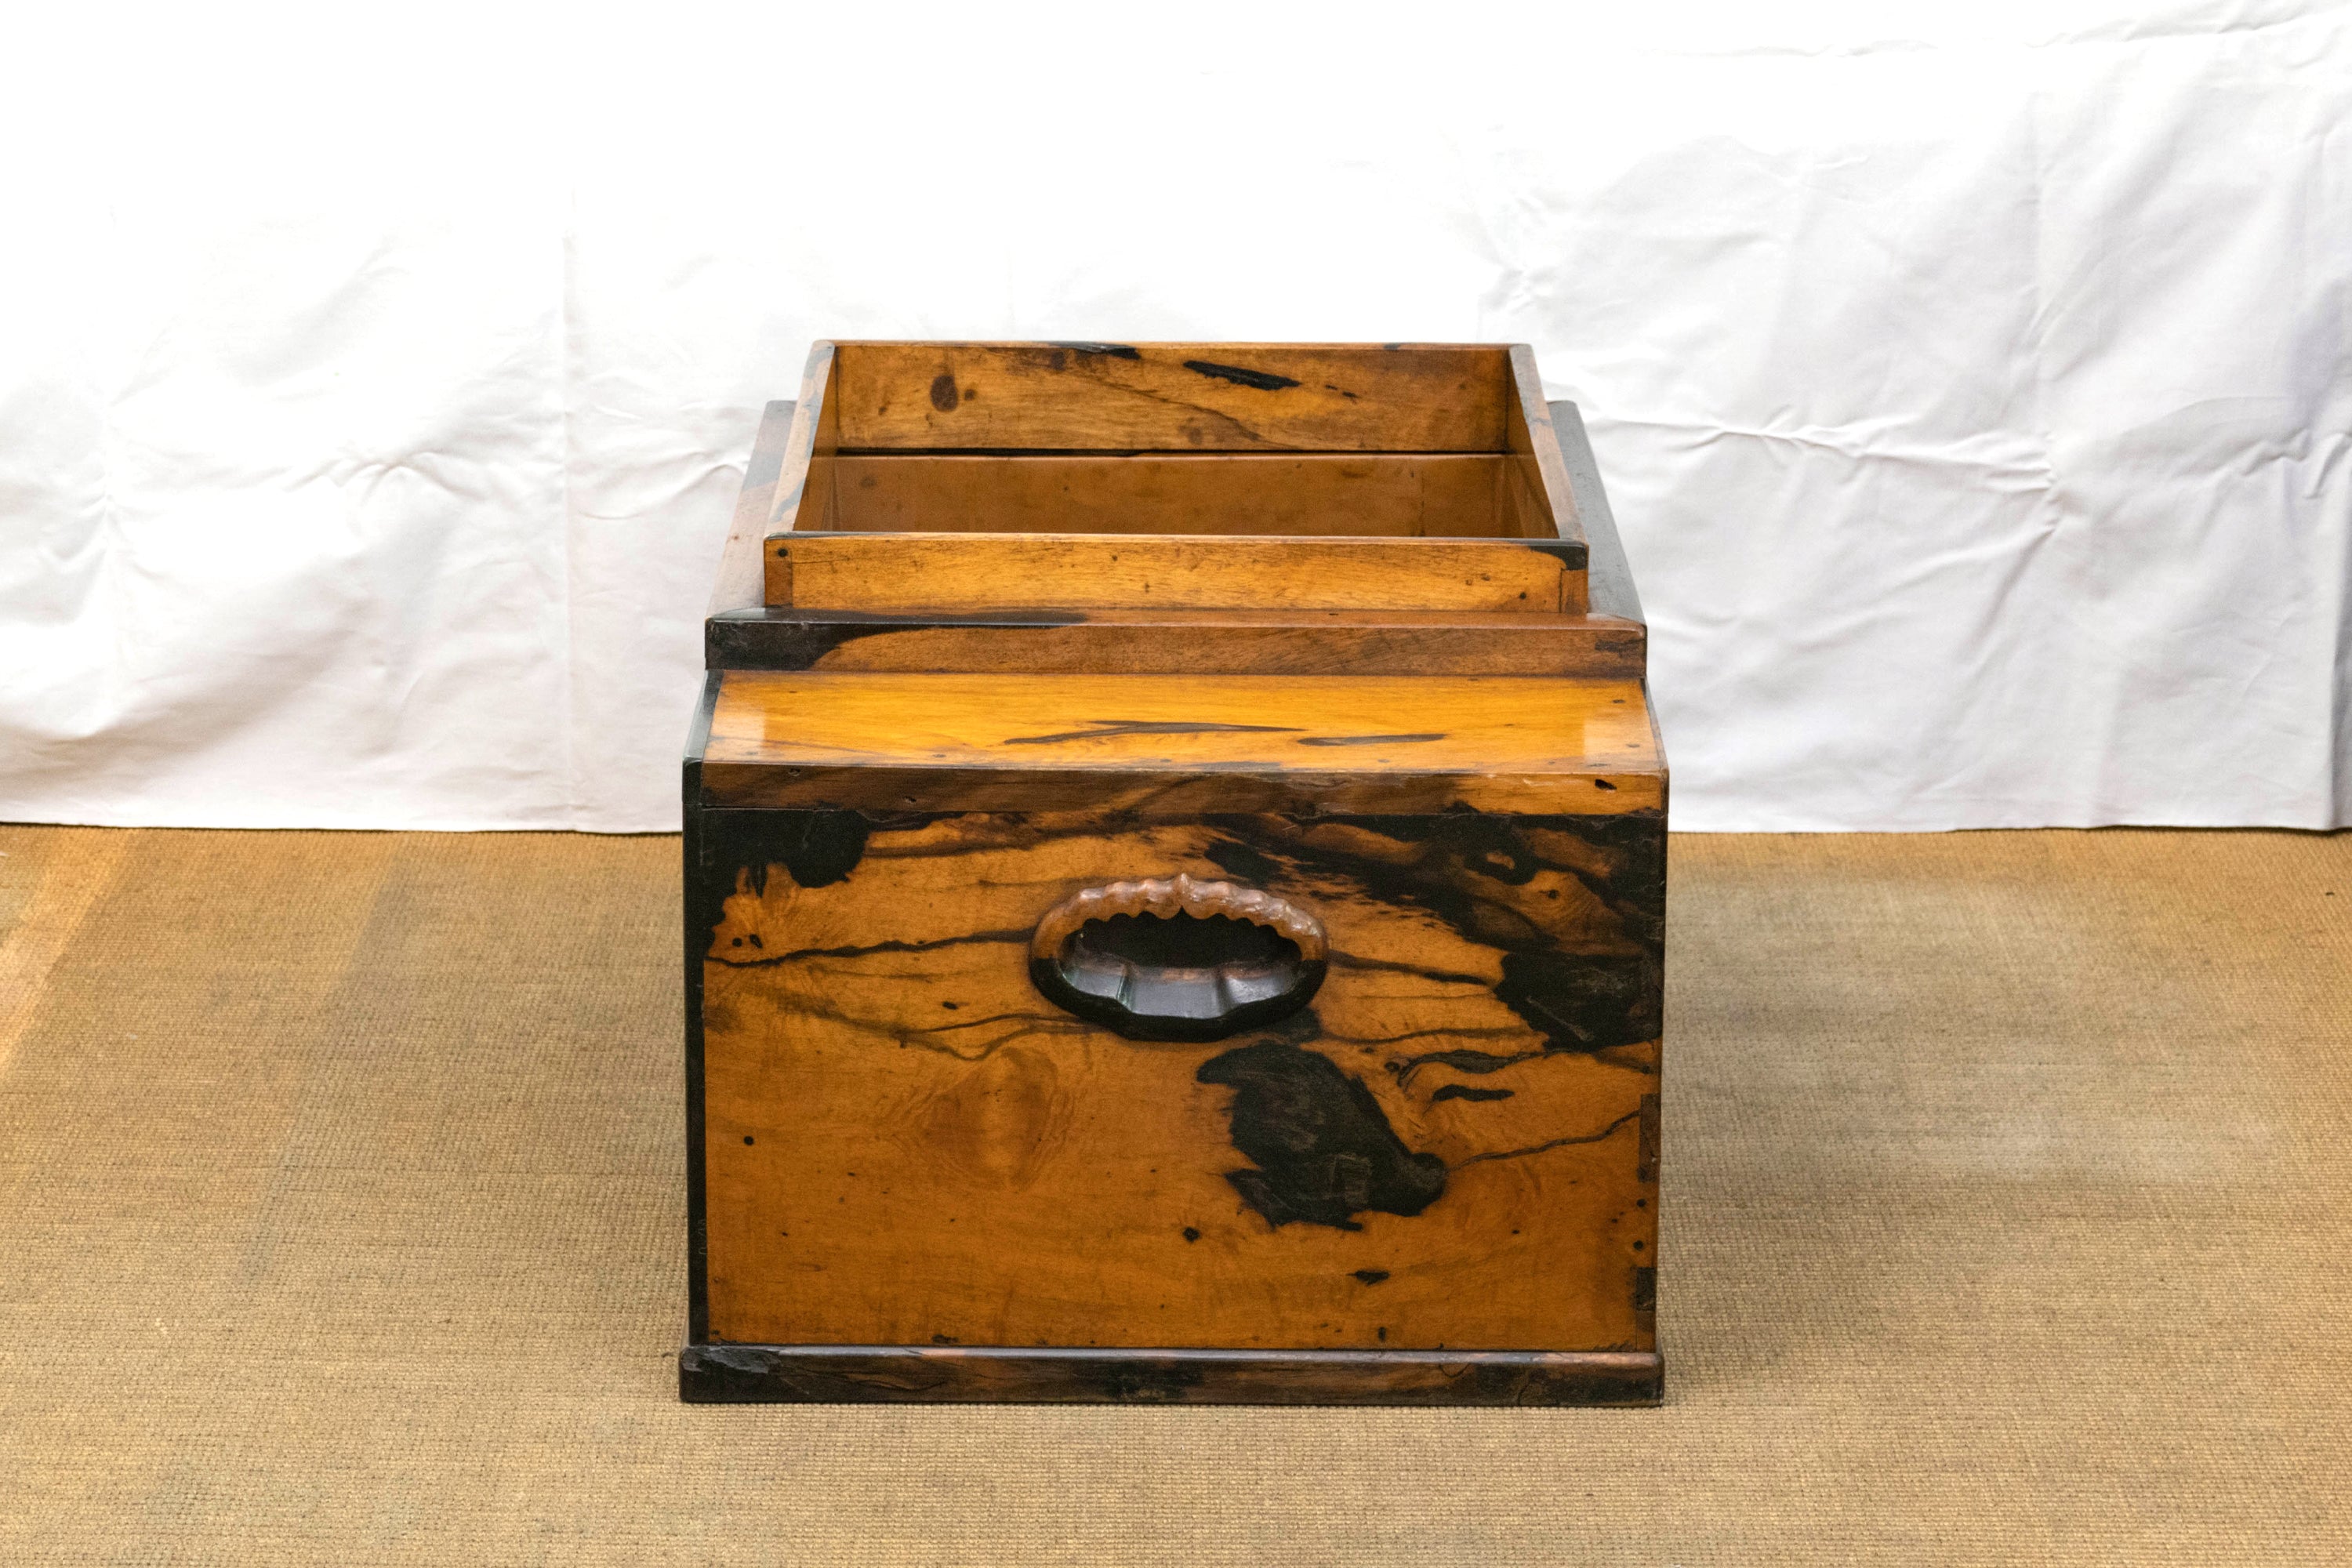 火鉢、黒柿の火鉢、薩摩藩の家紋入り、幕末頃の品、側板に漆の剥げ、ひび割れがあります、骨董品、30×37×20cm、大珍品